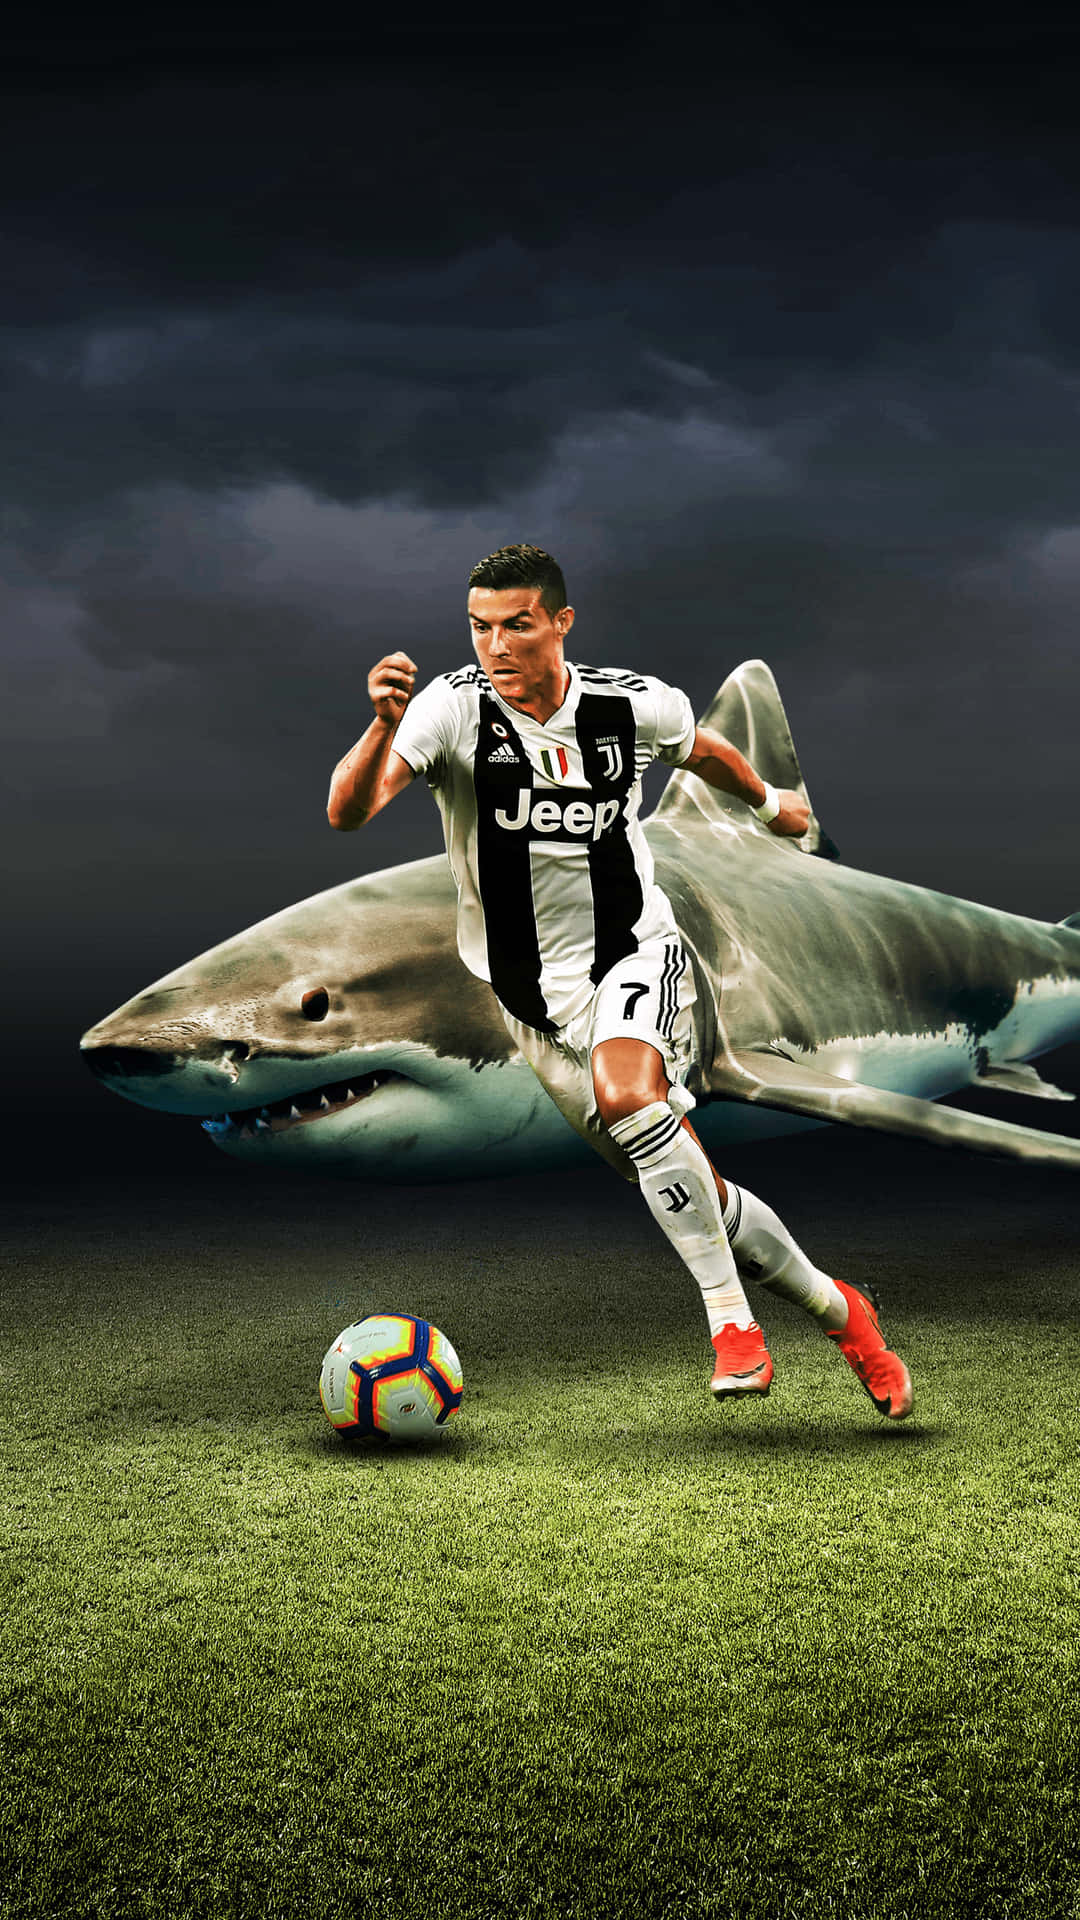 Bildpå Cristiano Ronaldo Som Är På Väg Att Ta Ett Skott I En Fotbollsmatch. Wallpaper